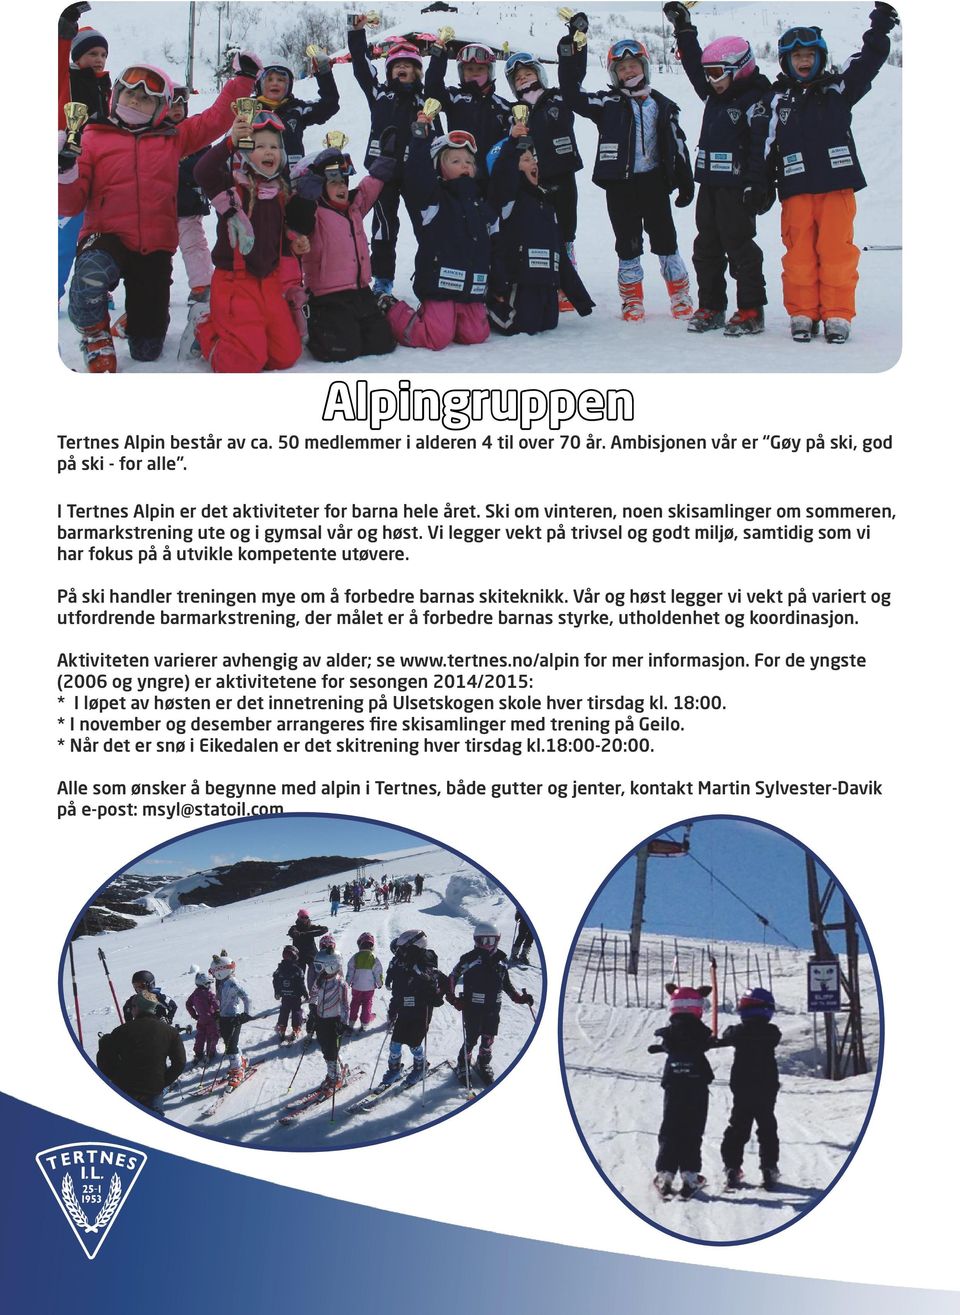 På ski handler treningen mye om å forbedre barnas skiteknikk. Vår og høst legger vi vekt på variert og utfordrende barmarkstrening, der målet er å forbedre barnas styrke, utholdenhet og koordinasjon.